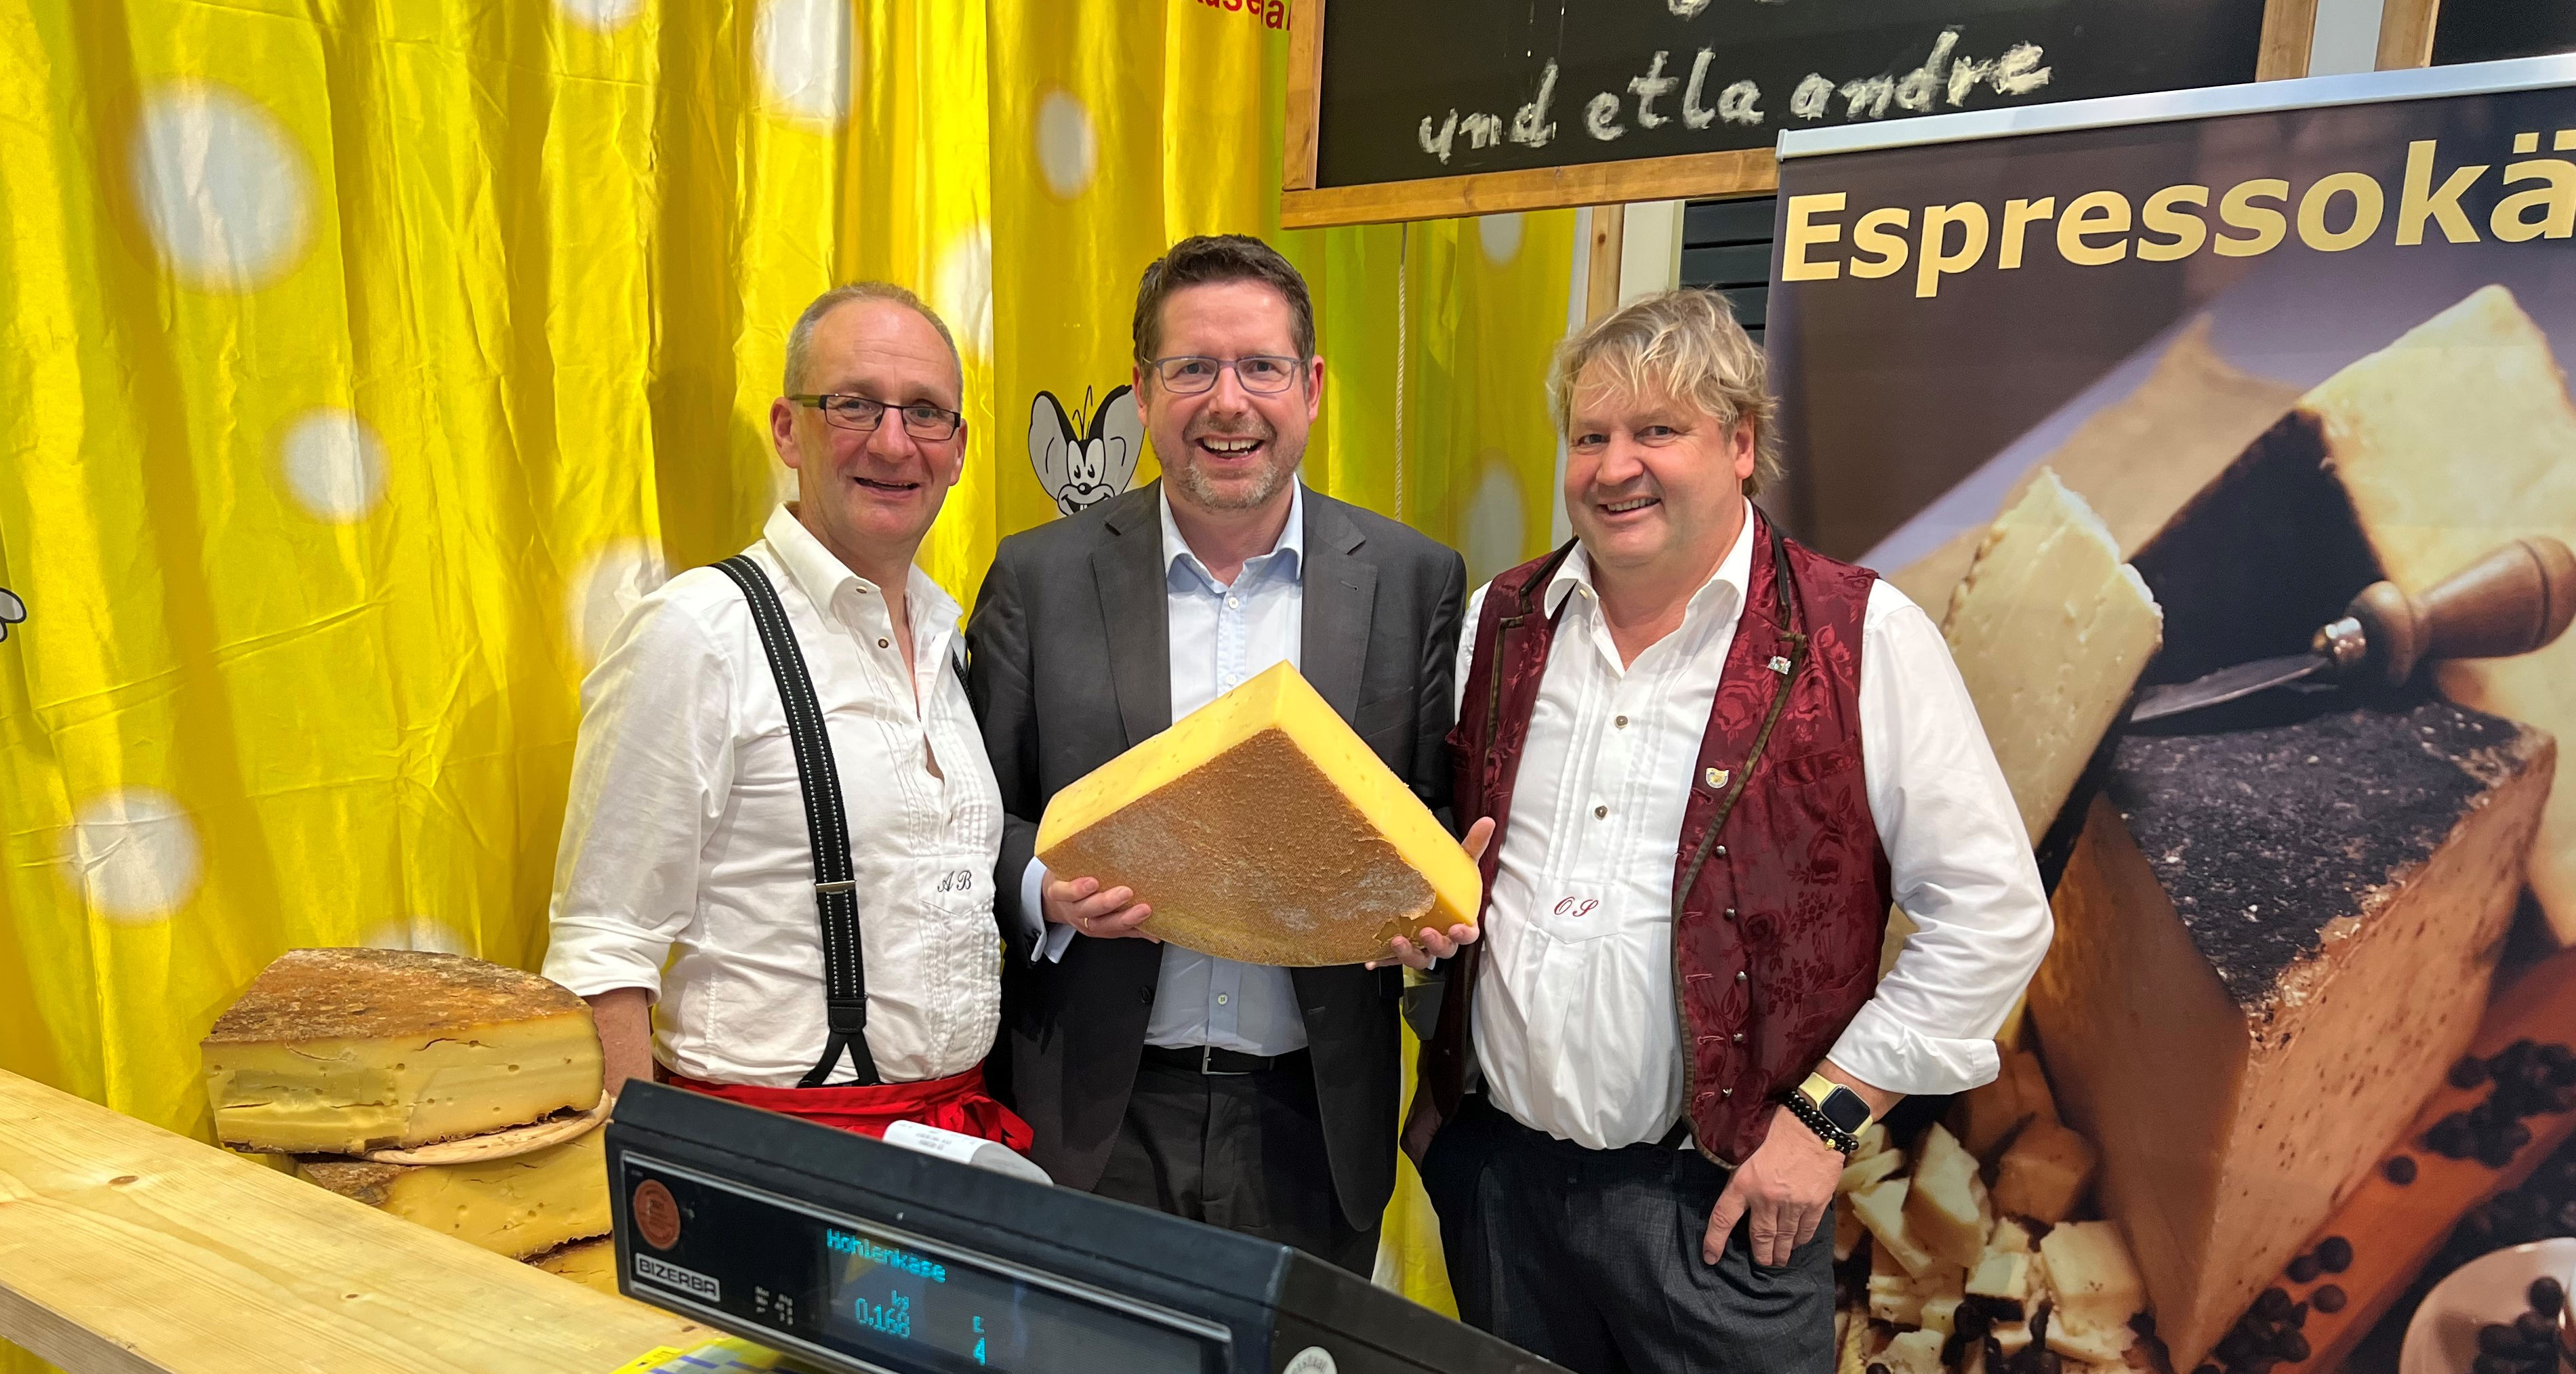 Mit Ostallgäuer Käse fangen die beiden Käsemeister Olli Stich (rechts) und Alfred Becker nicht etwa Mäuse, sondern begeistern Touristen für unsere Region. Davon konnte sich auch Stephan Stracke überzeugen.